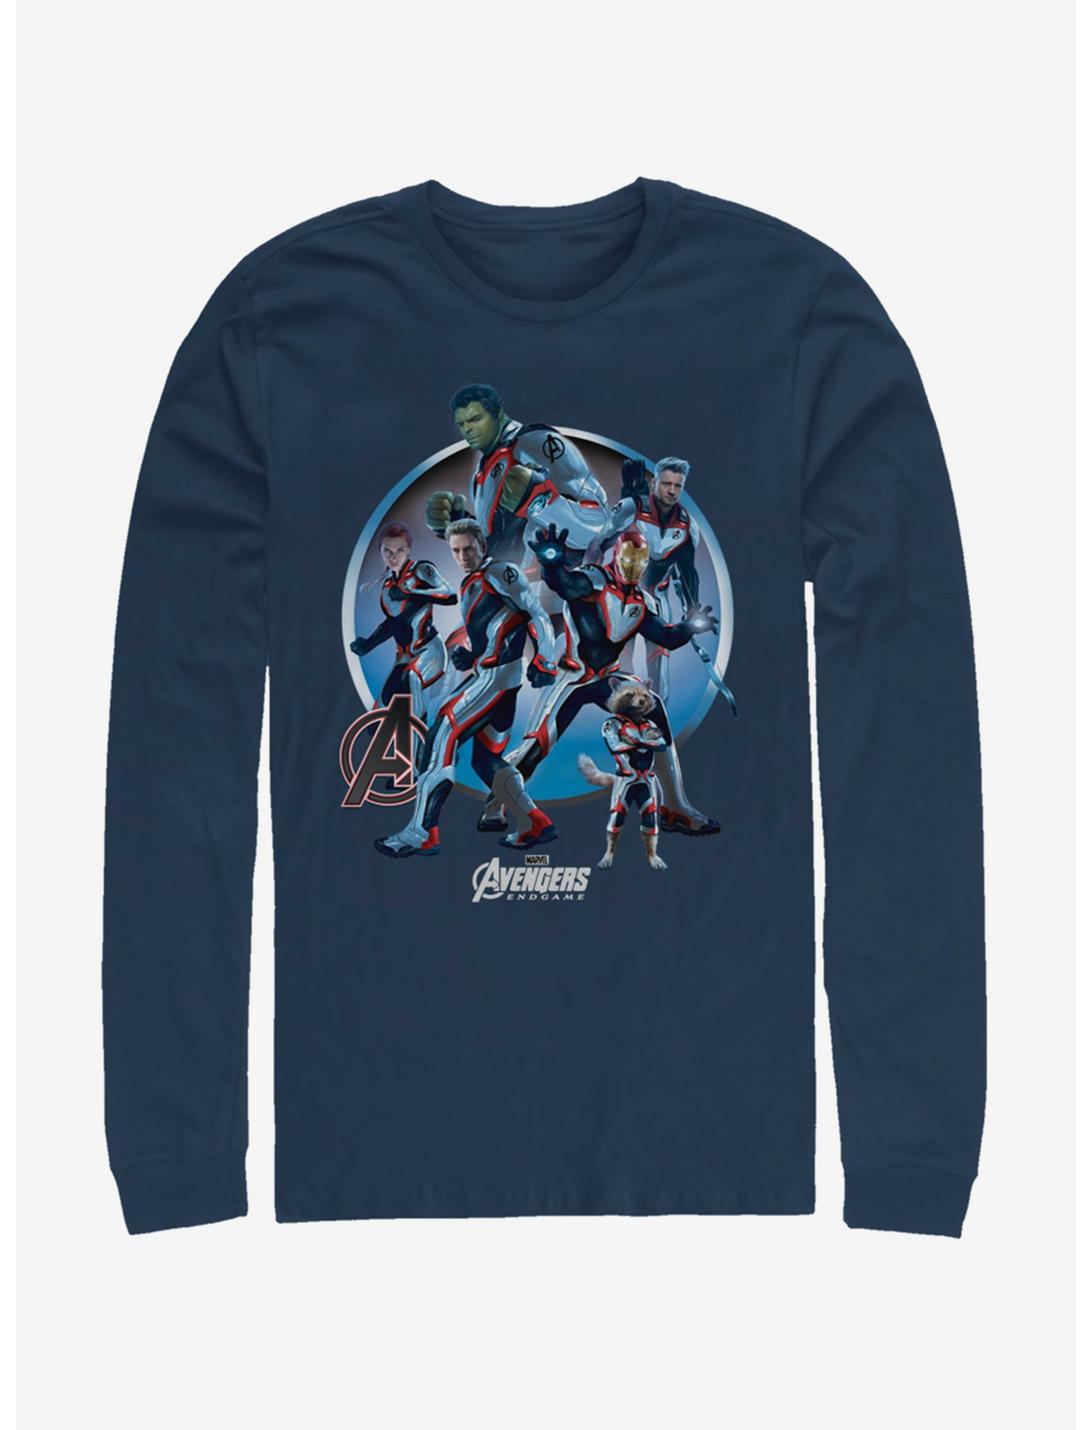 Marvel Avengers: Endgame Unite Navy Blue Long-Sleeve T-Shirt, NAVY, hi-res